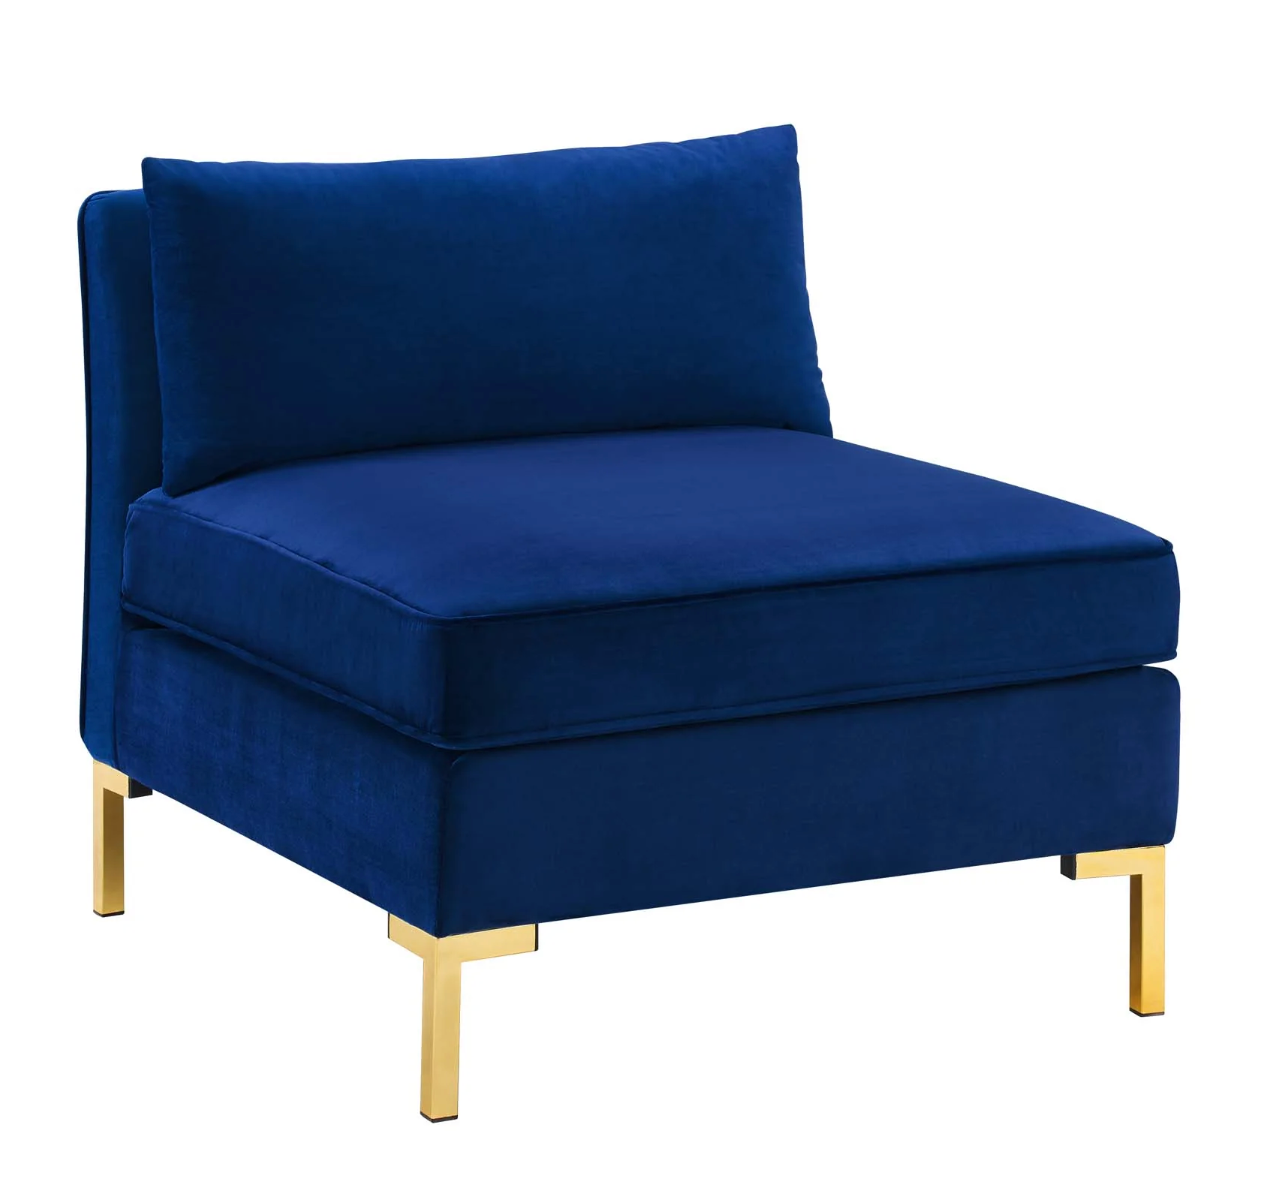 Dark Blue Velvet Armless Chair Piece for Sectional Sofa